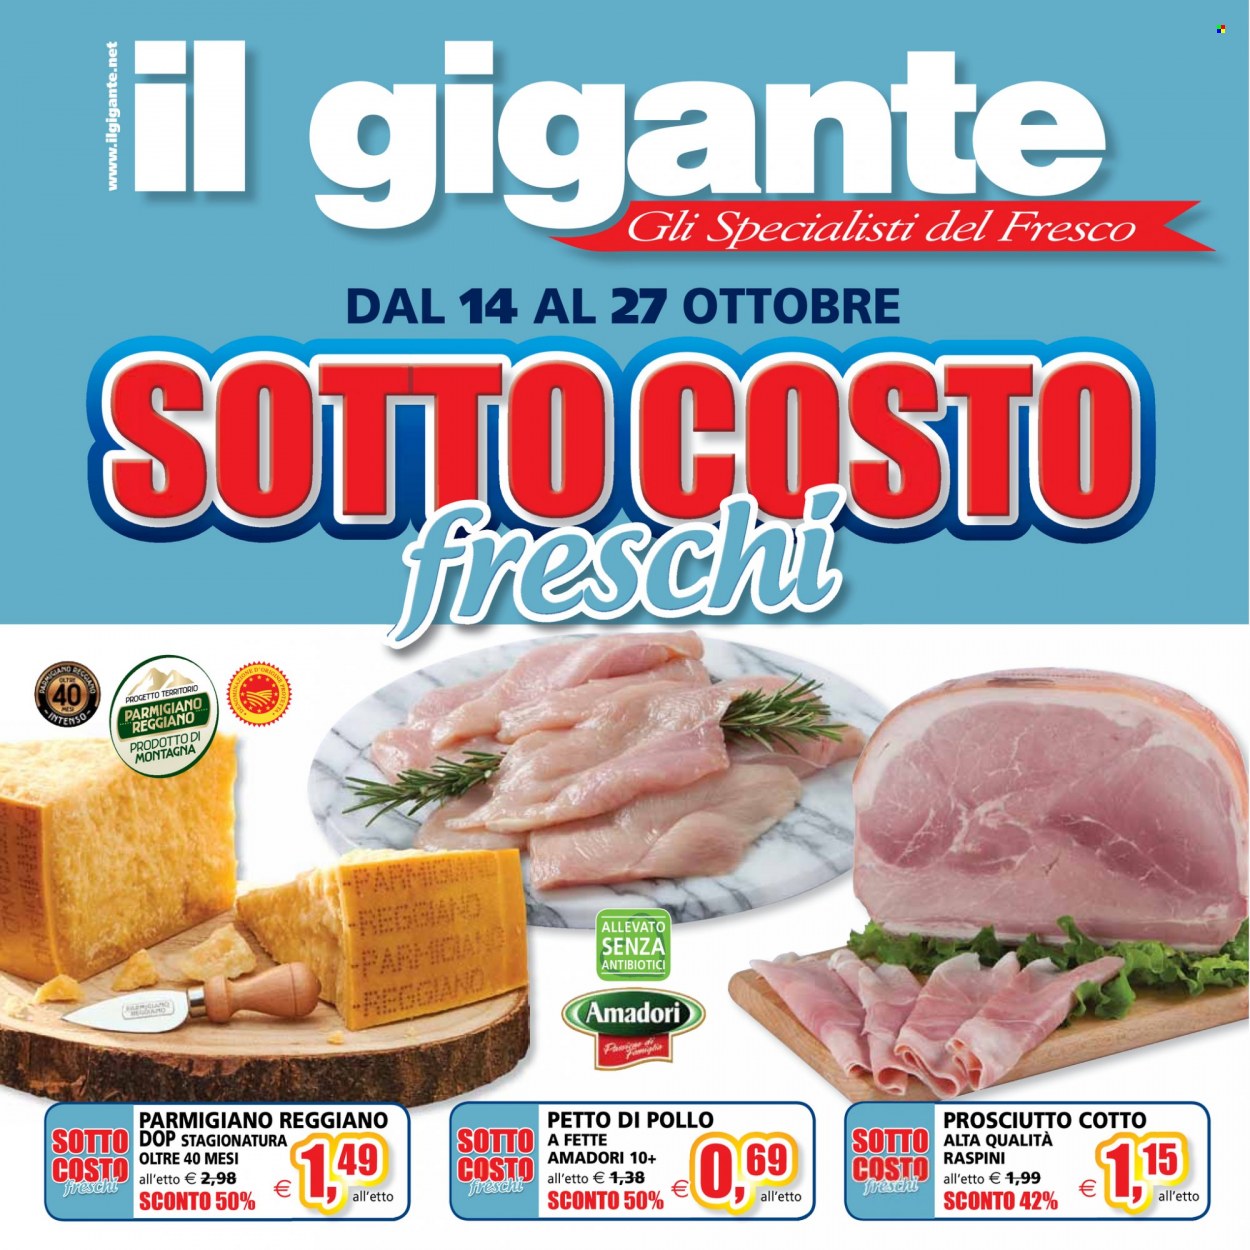 thumbnail - Volantino Il Gigante - 14/10/2021 - 27/10/2021 - Prodotti in offerta - petto di pollo, Amadori, prosciutto, prosciutto cotto, formaggio, parmigiano. Pagina 1.